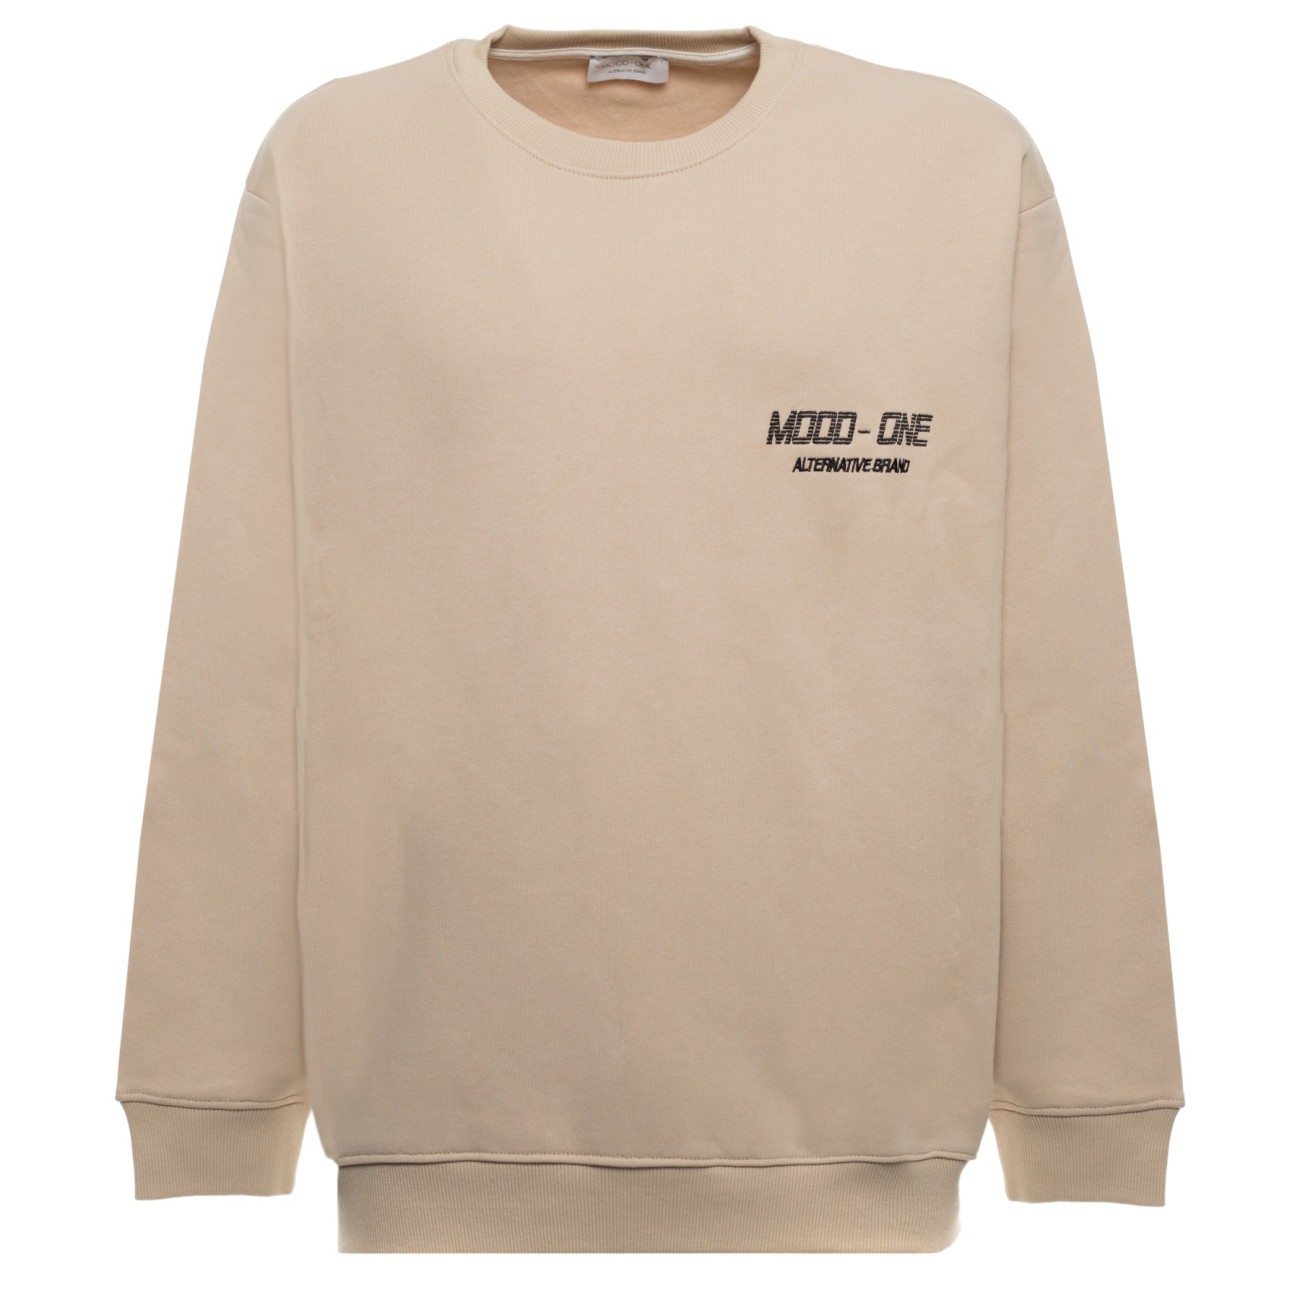 Mood-One beige sweatshirt